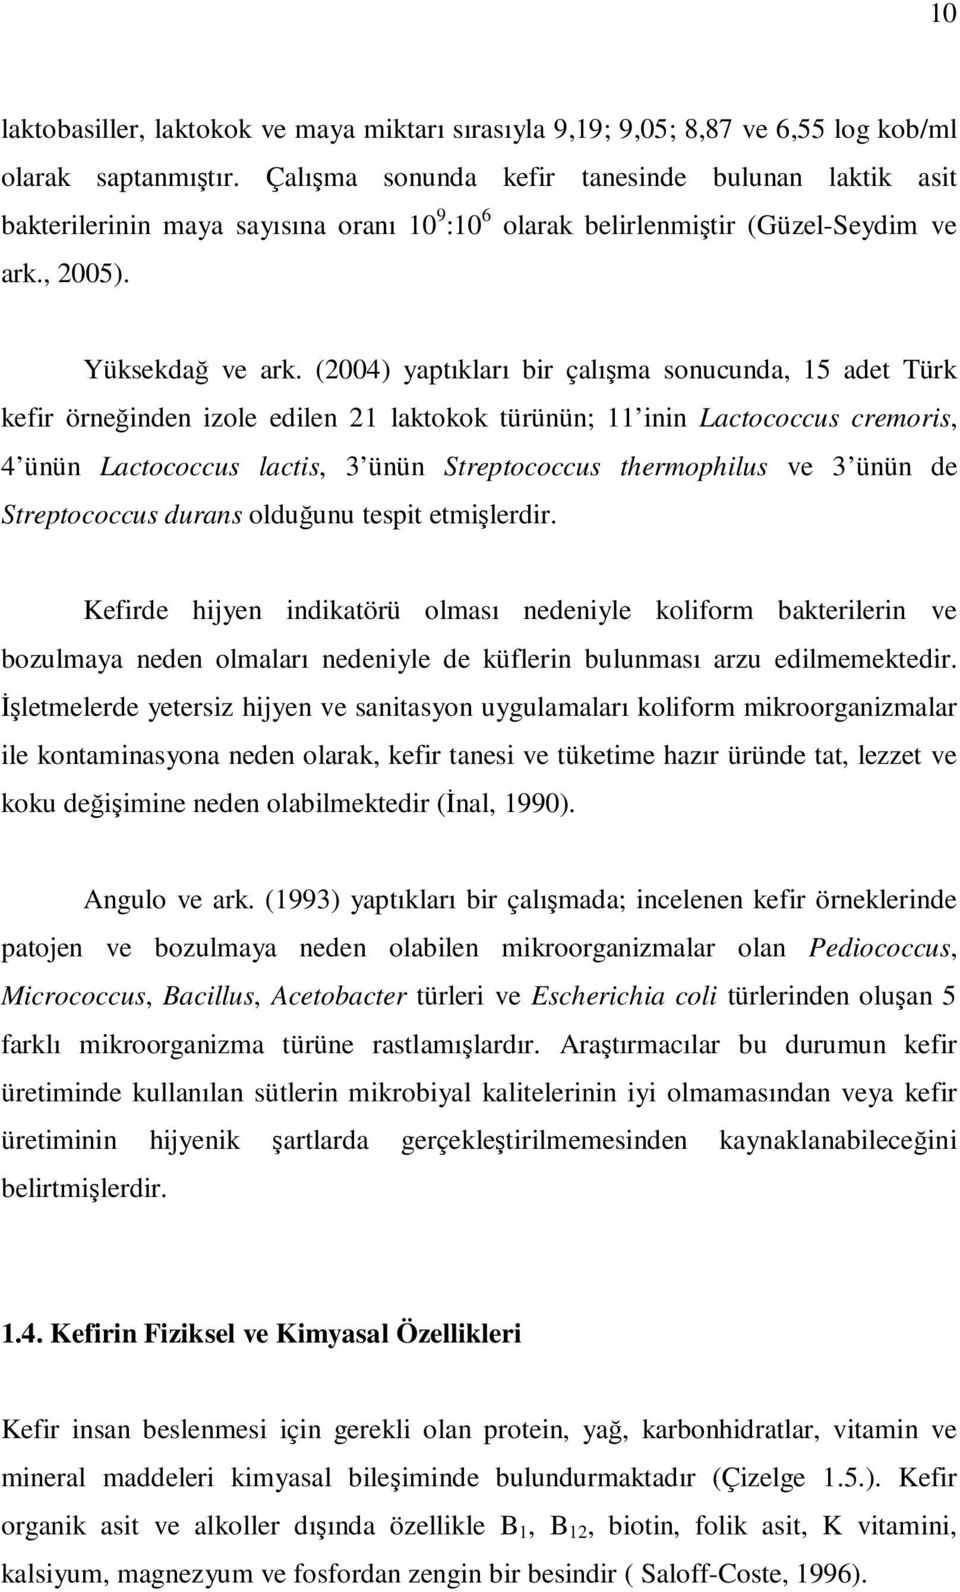 (2004) yaptıkları bir çalışma sonucunda, 15 adet Türk kefir örneğinden izole edilen 21 laktokok türünün; 11 inin Lactococcus cremoris, 4 ünün Lactococcus lactis, 3 ünün Streptococcus thermophilus ve